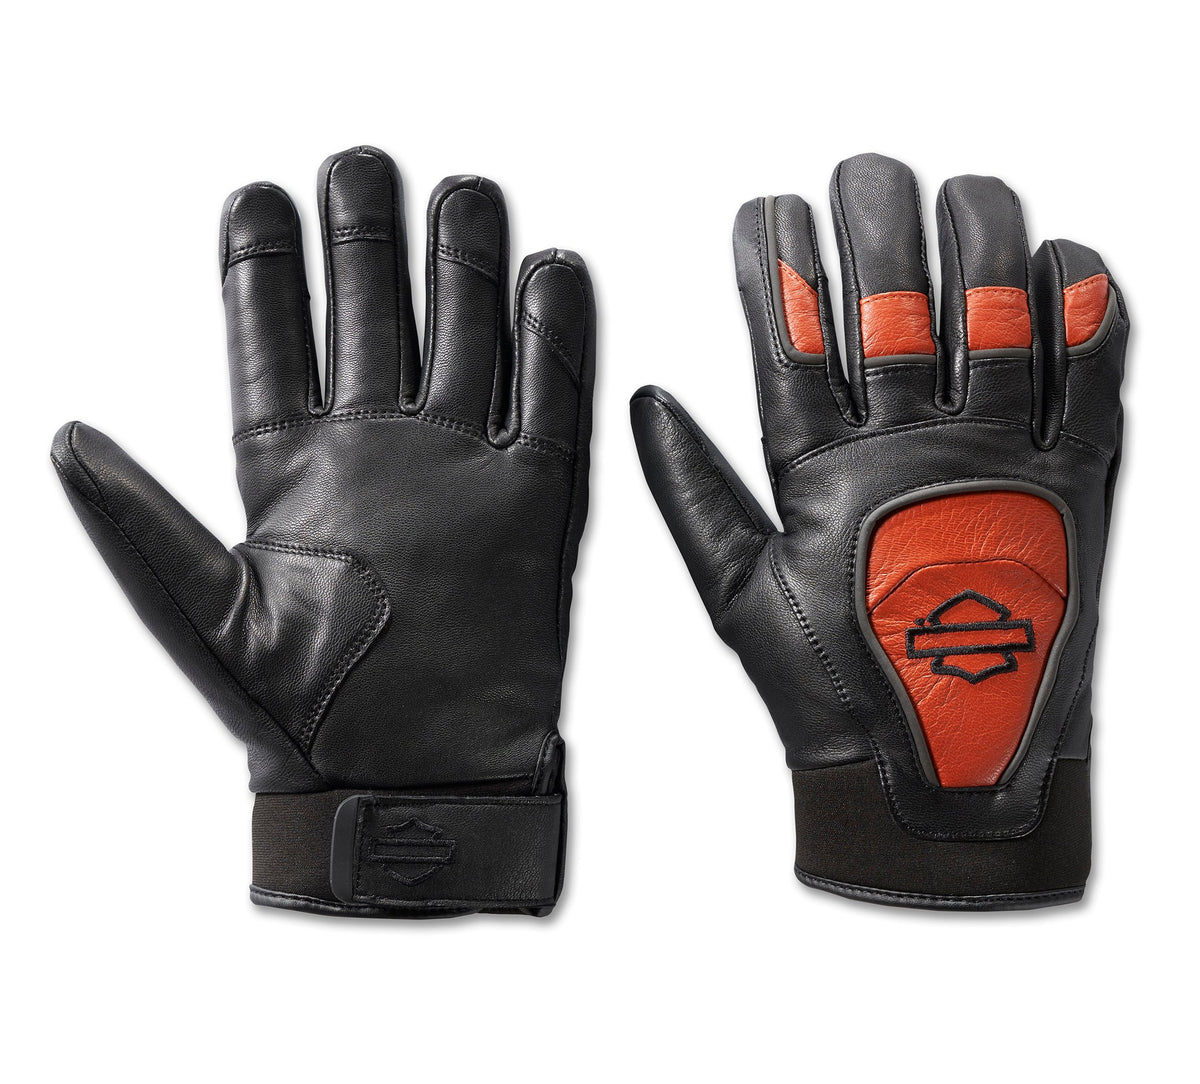 Harley-Davidson Men's Ovation Waterproof Leather Gloves - Black & Vintage Orange